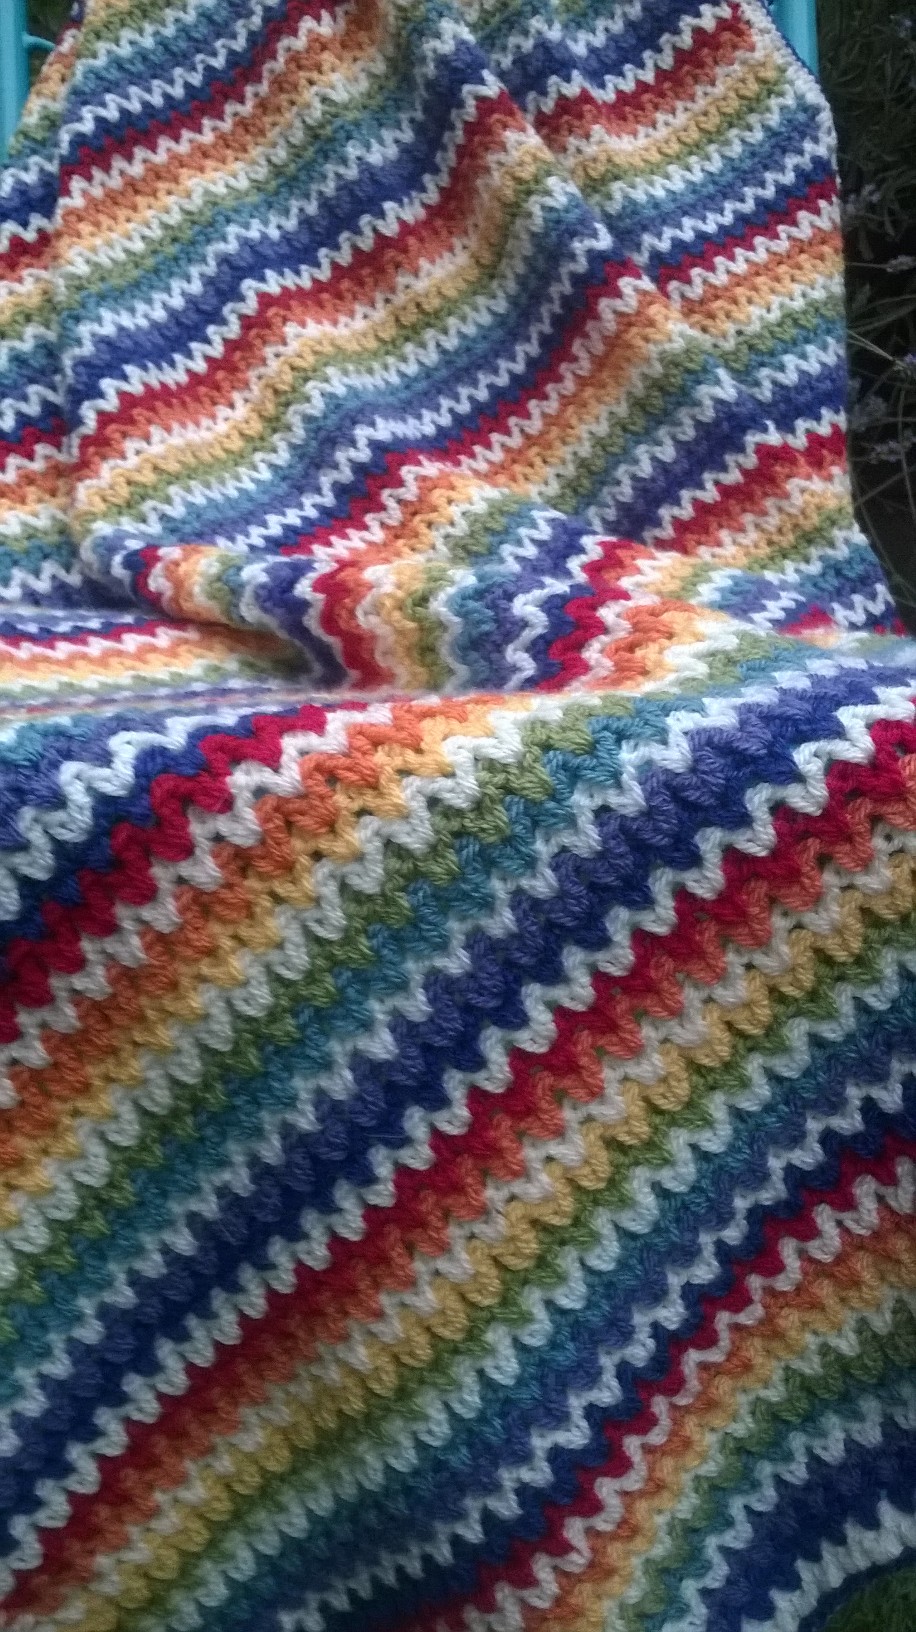 crochet v stitch blanket, rainbow blanket